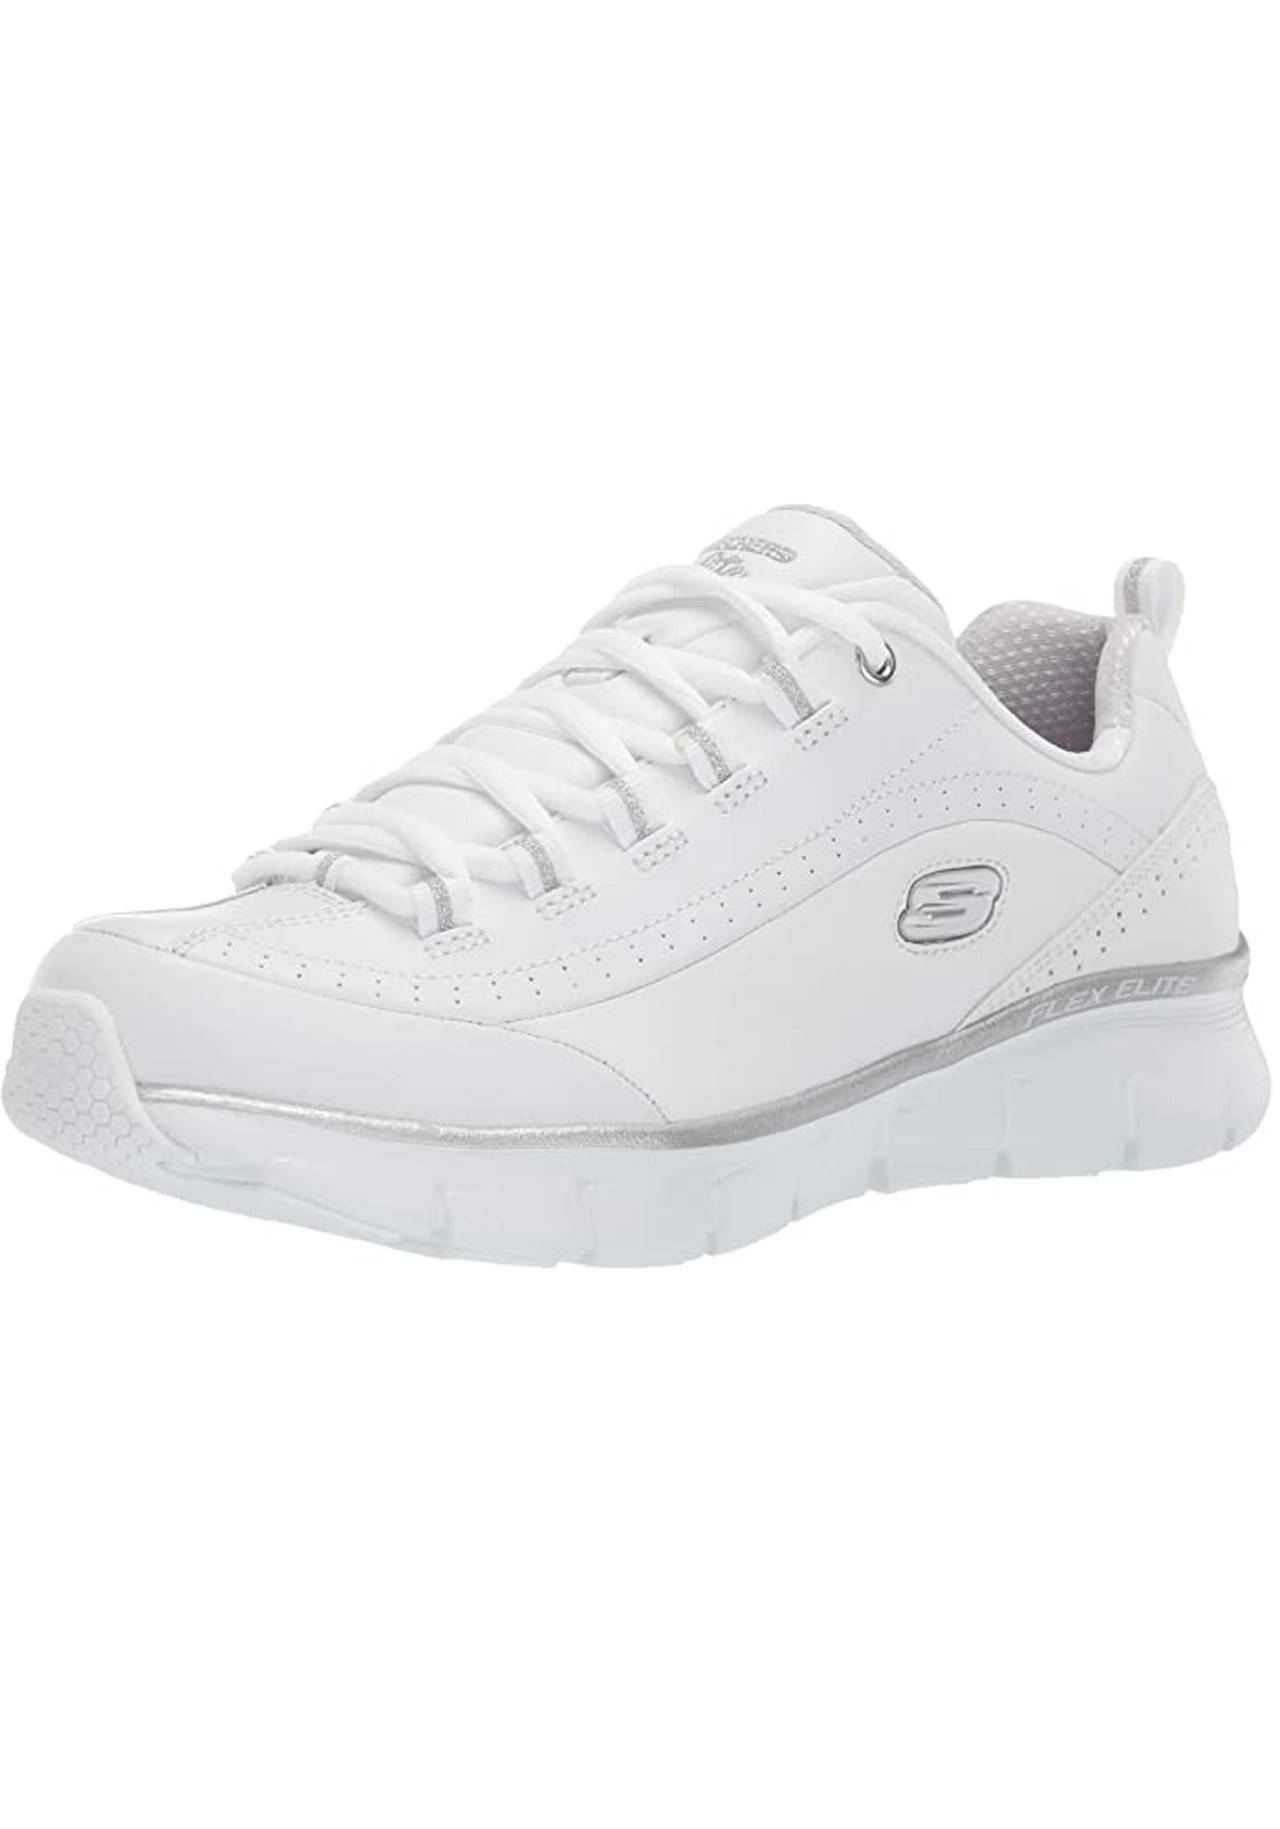 Zapatillas Skechers blancas